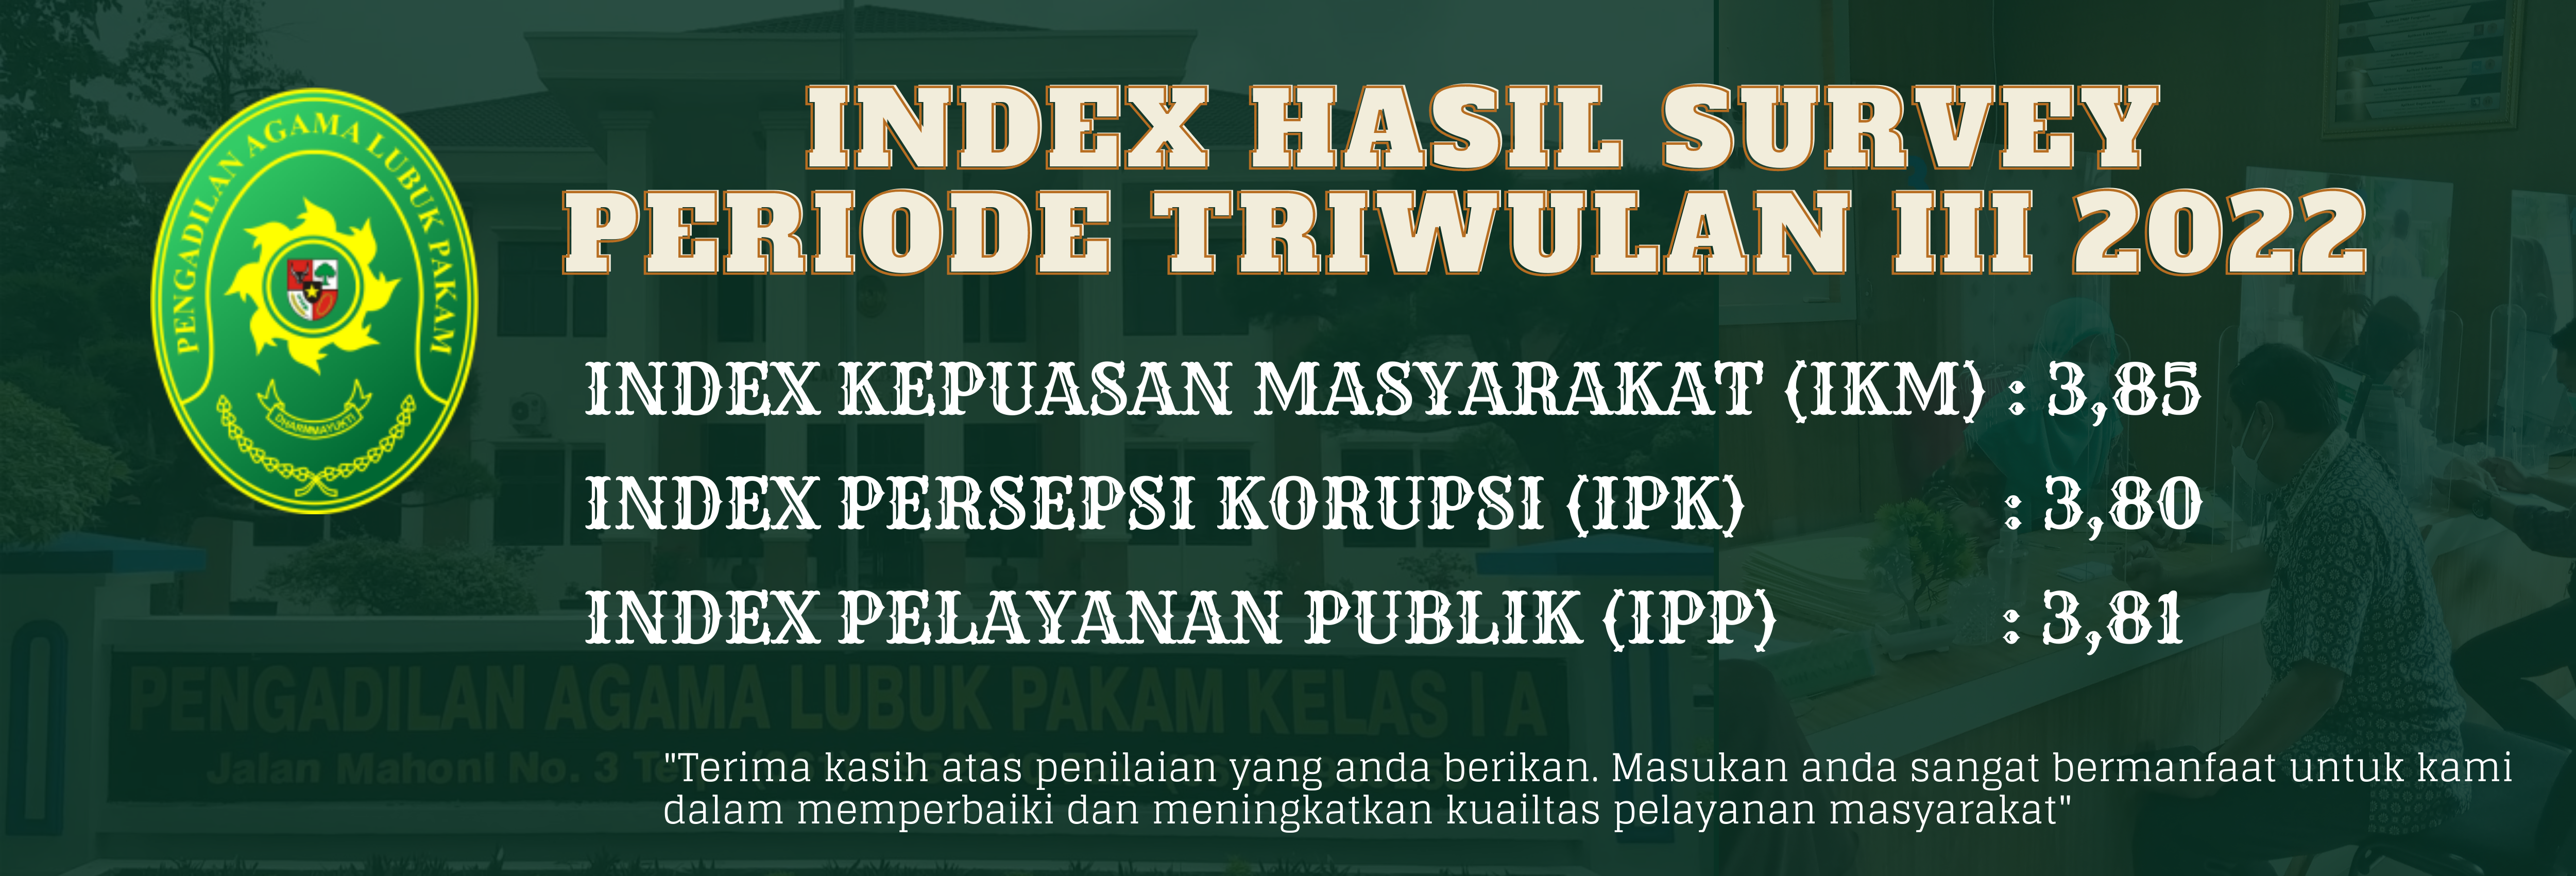 Index Hasil Survey Tri Wulan III